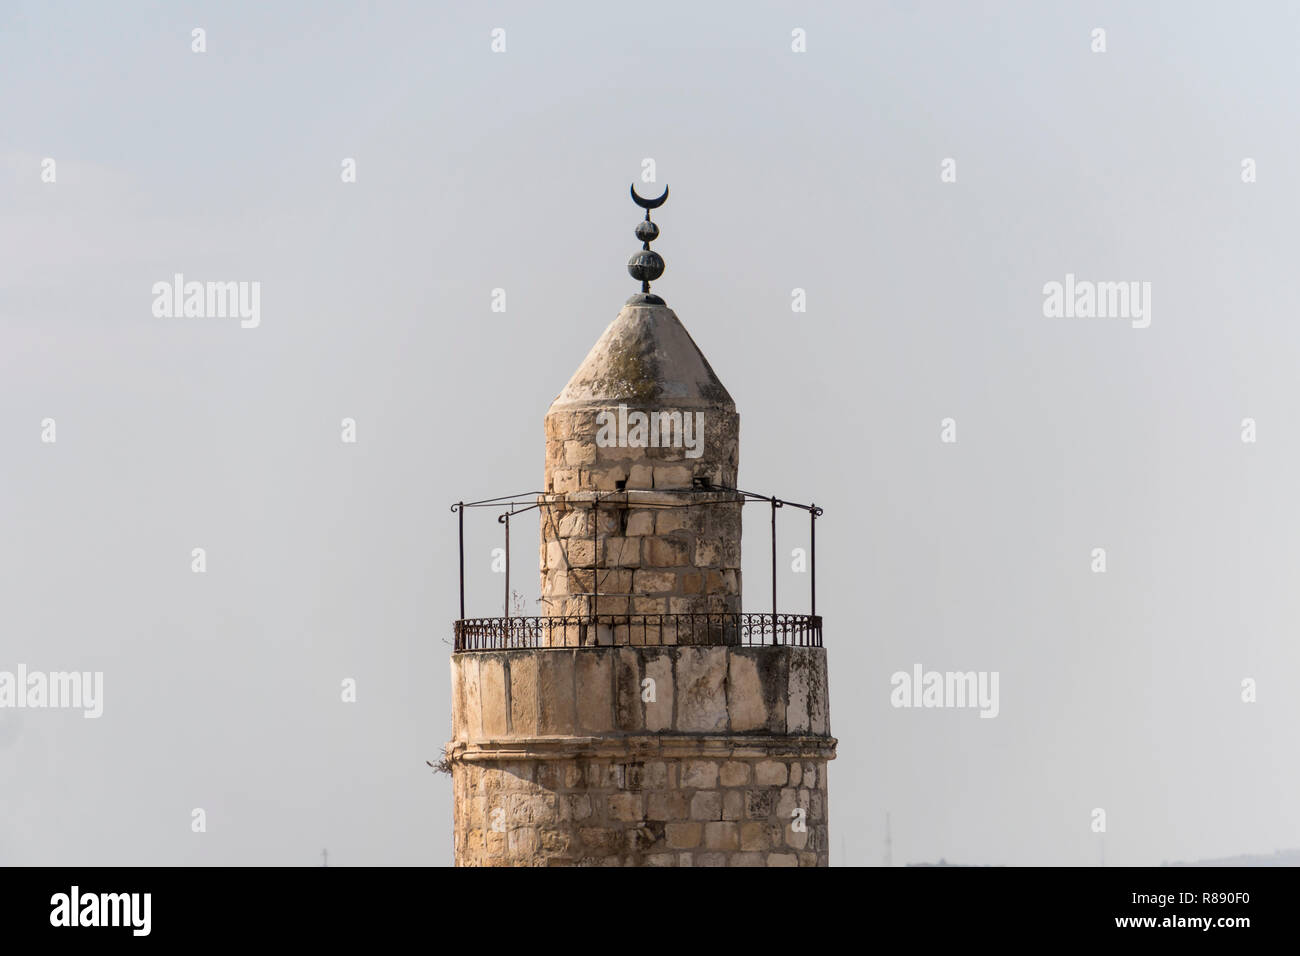 Cerca de la Torre de David de las murallas de la ciudad vieja de Jerusalén, Israel contra el cielo. La torre de David es una antigua ciudadela situado cerca de la calle Jaffa gat Foto de stock